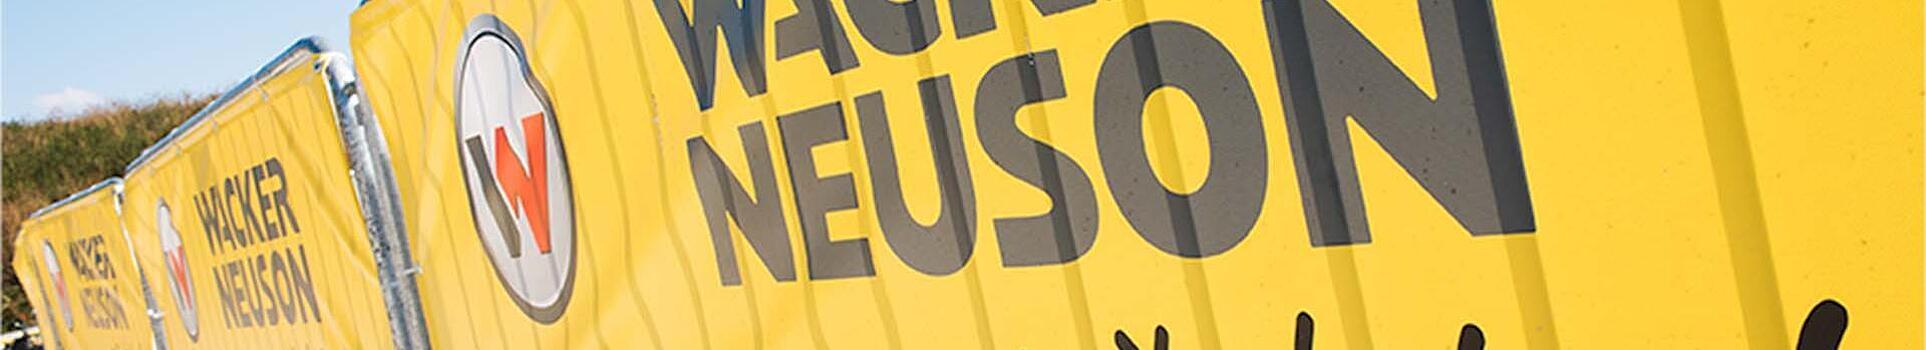 Banner mit Wacker Neuson Logo, Schriftzug und Claim.